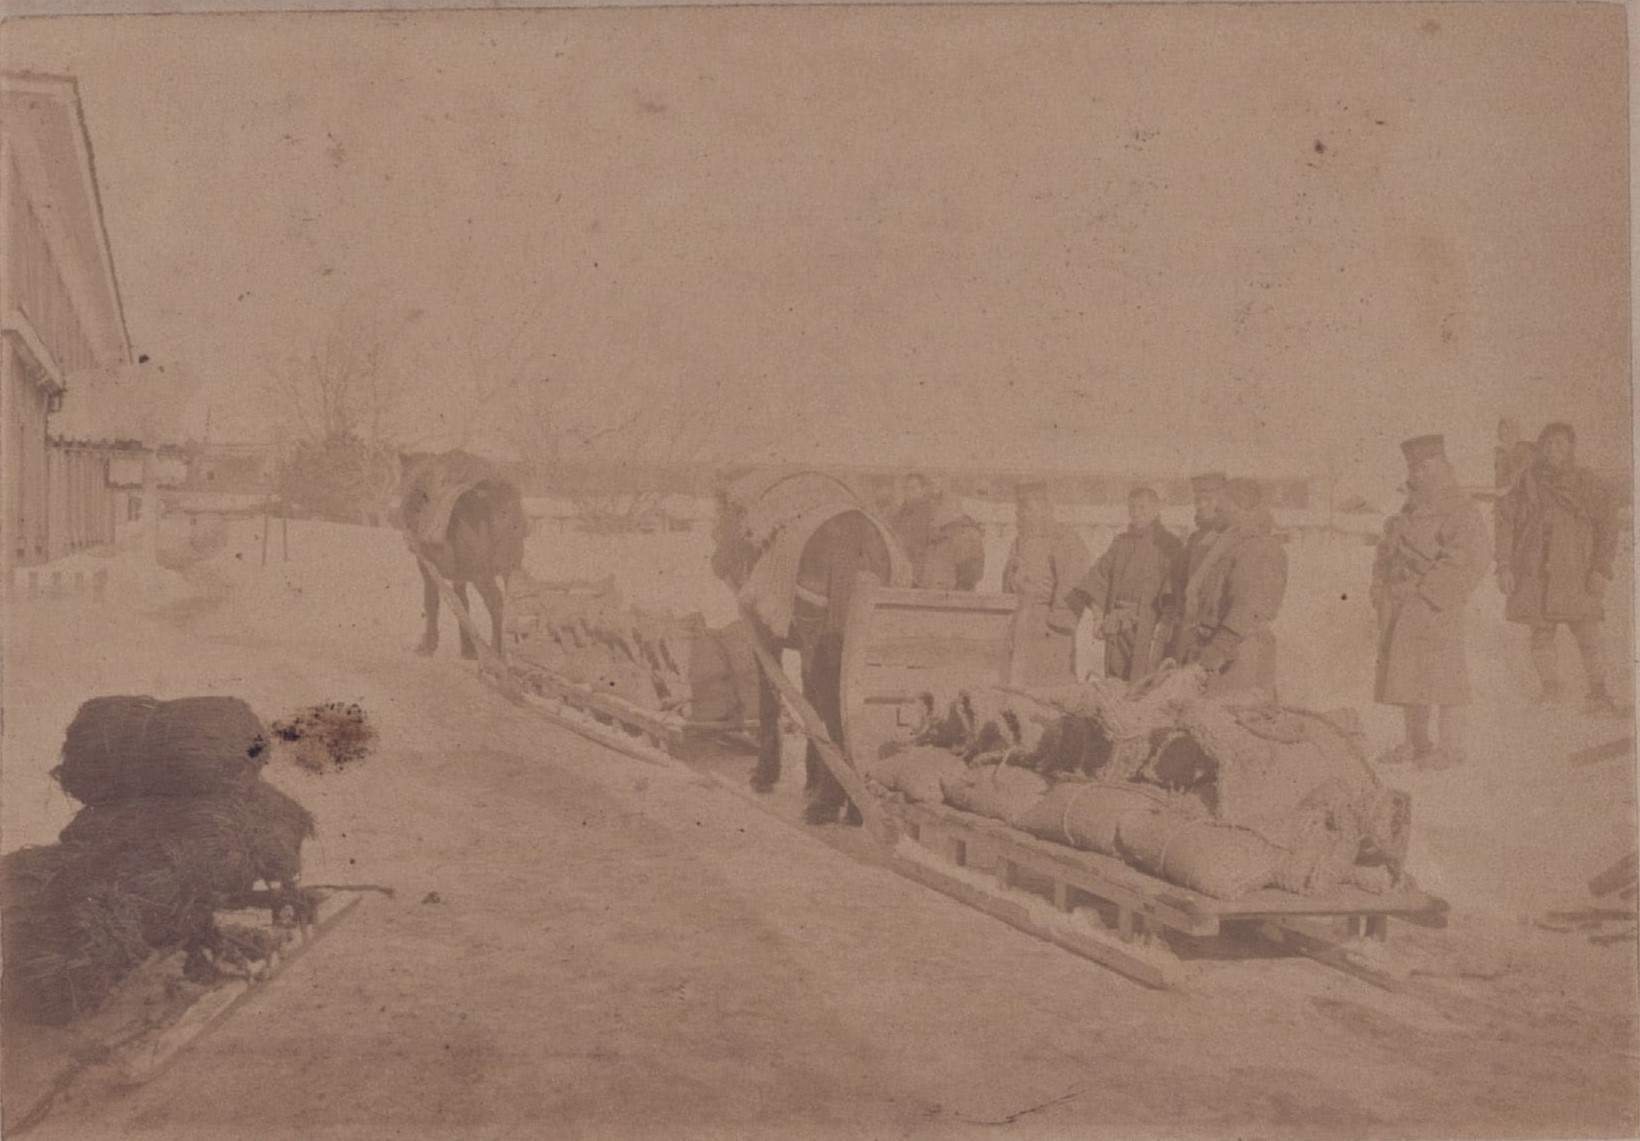 青森歩兵第五聯隊 本部前を出発する馬橇（（陸地測量部、1902）青森県立図書館デジタルアーカイブ）の画像。 